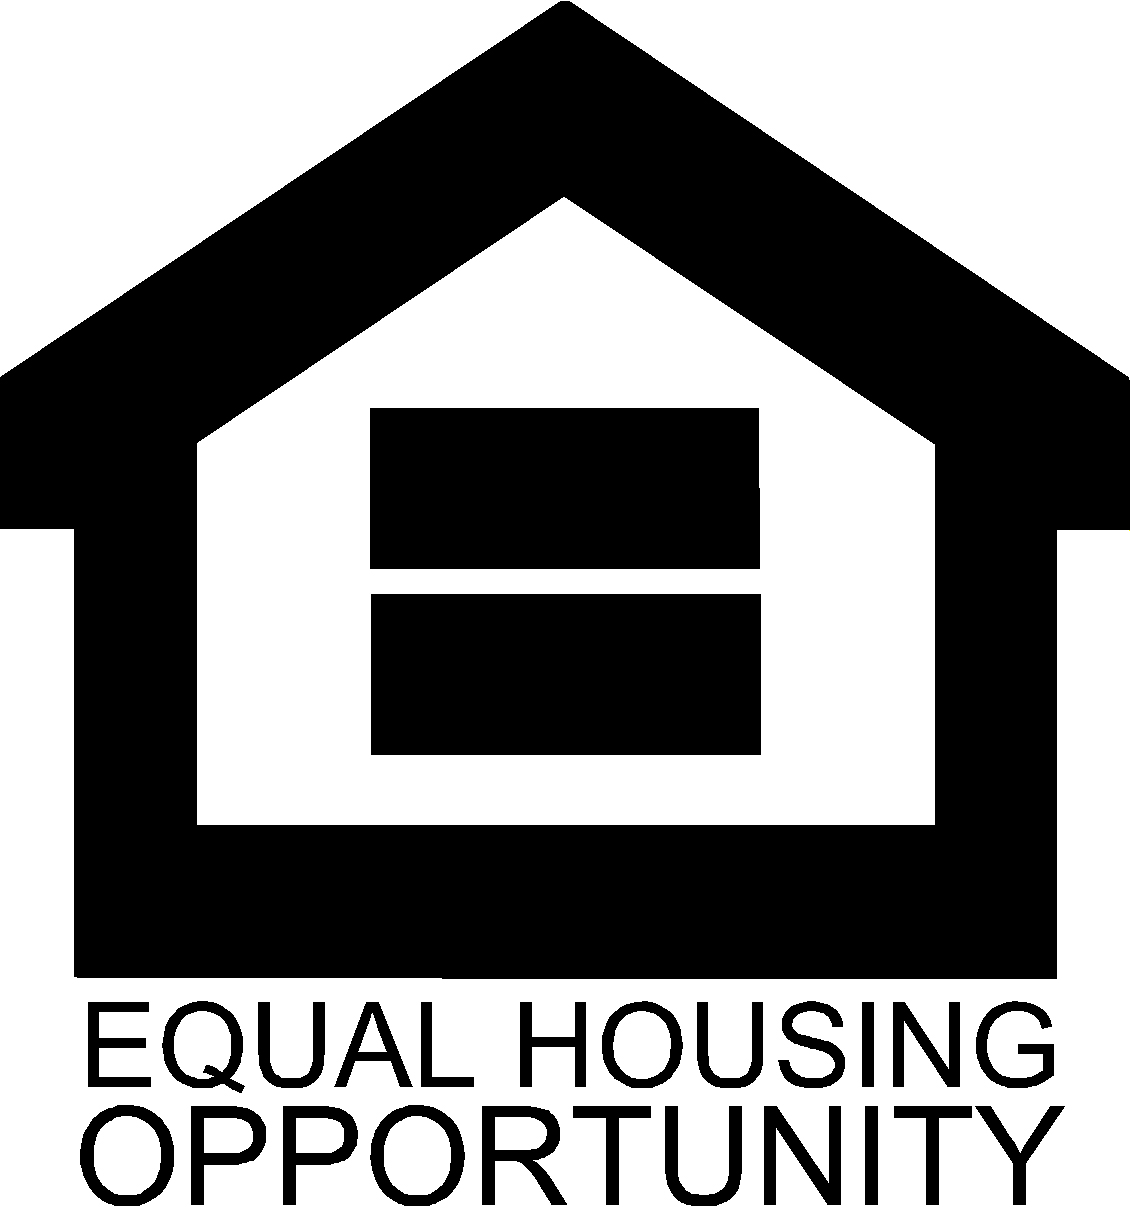 UCBR fair housing challenge